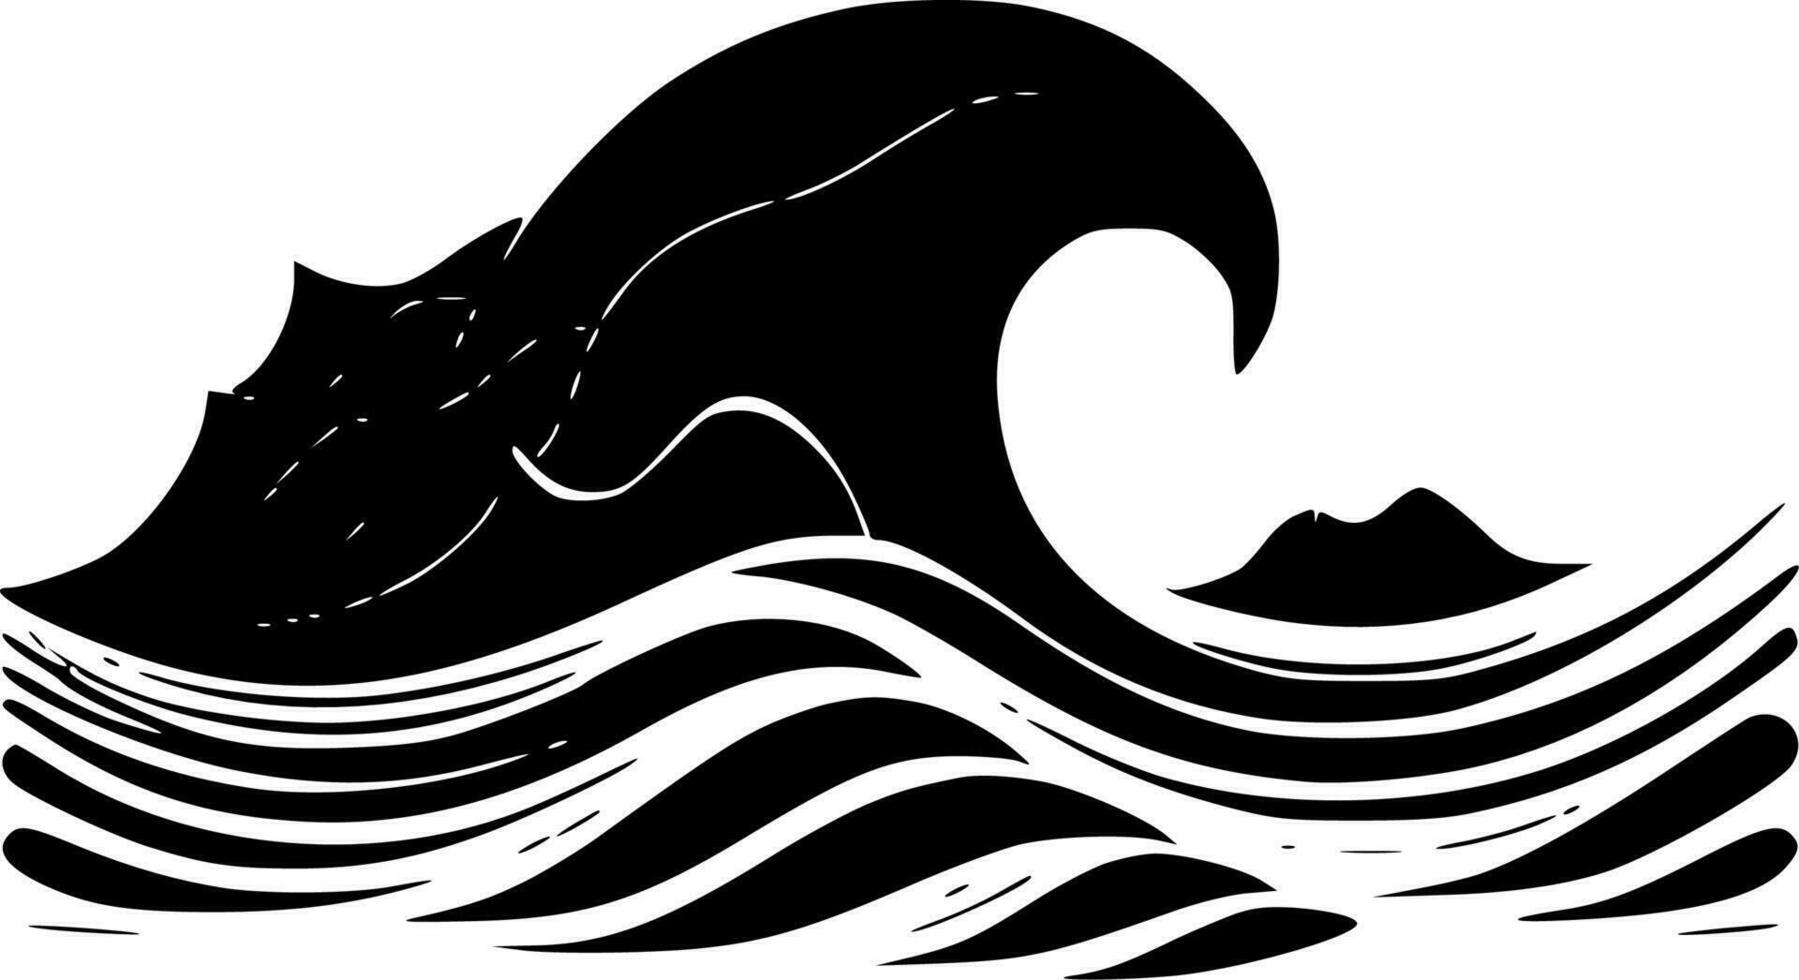 vågor, minimalistisk och enkel silhuett - vektor illustration